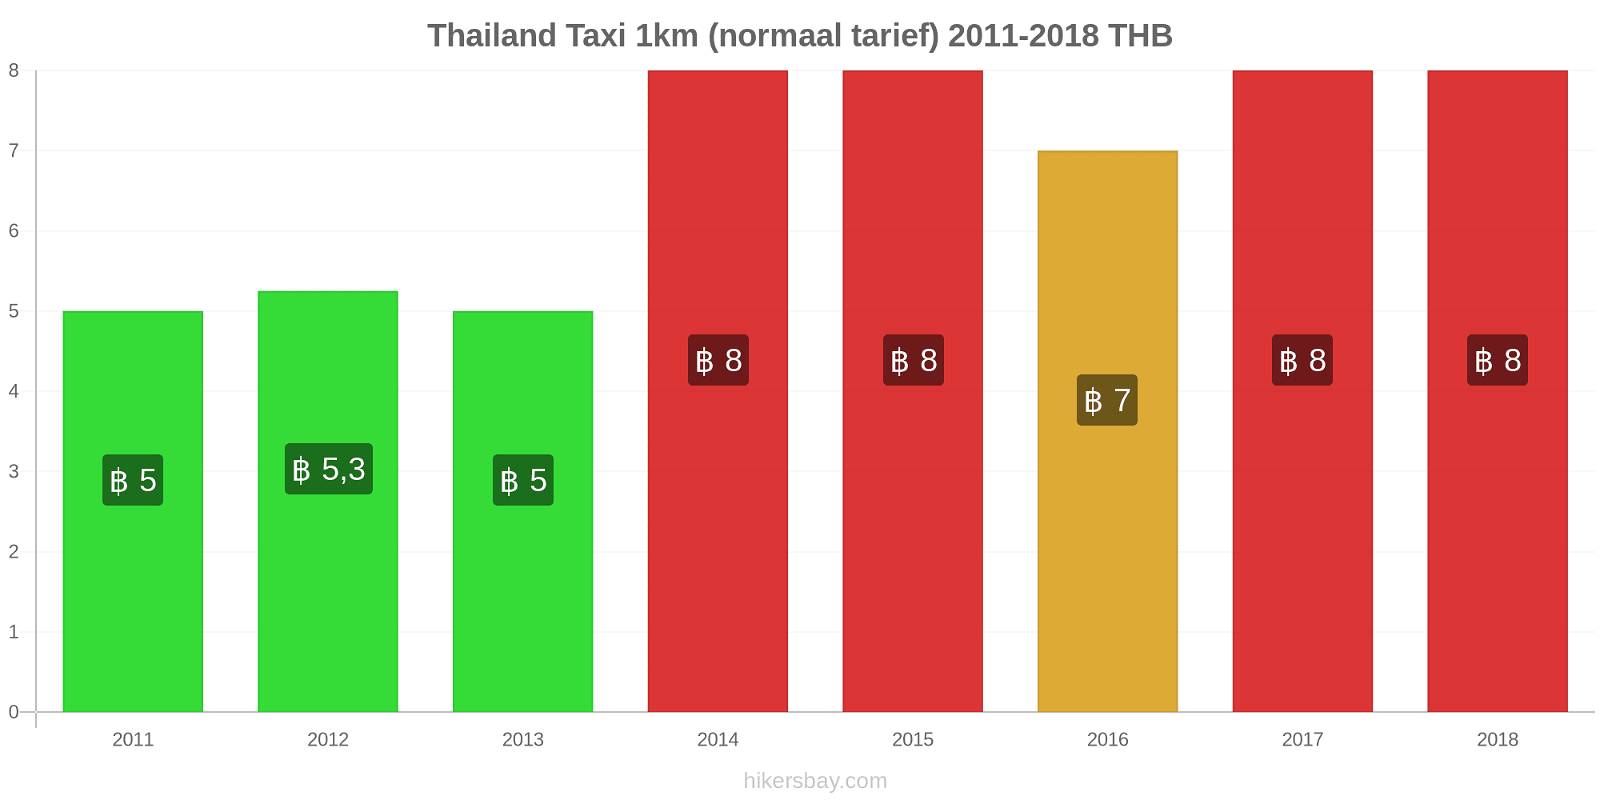 Thailand prijswijzigingen Taxi 1km (normaal tarief) hikersbay.com